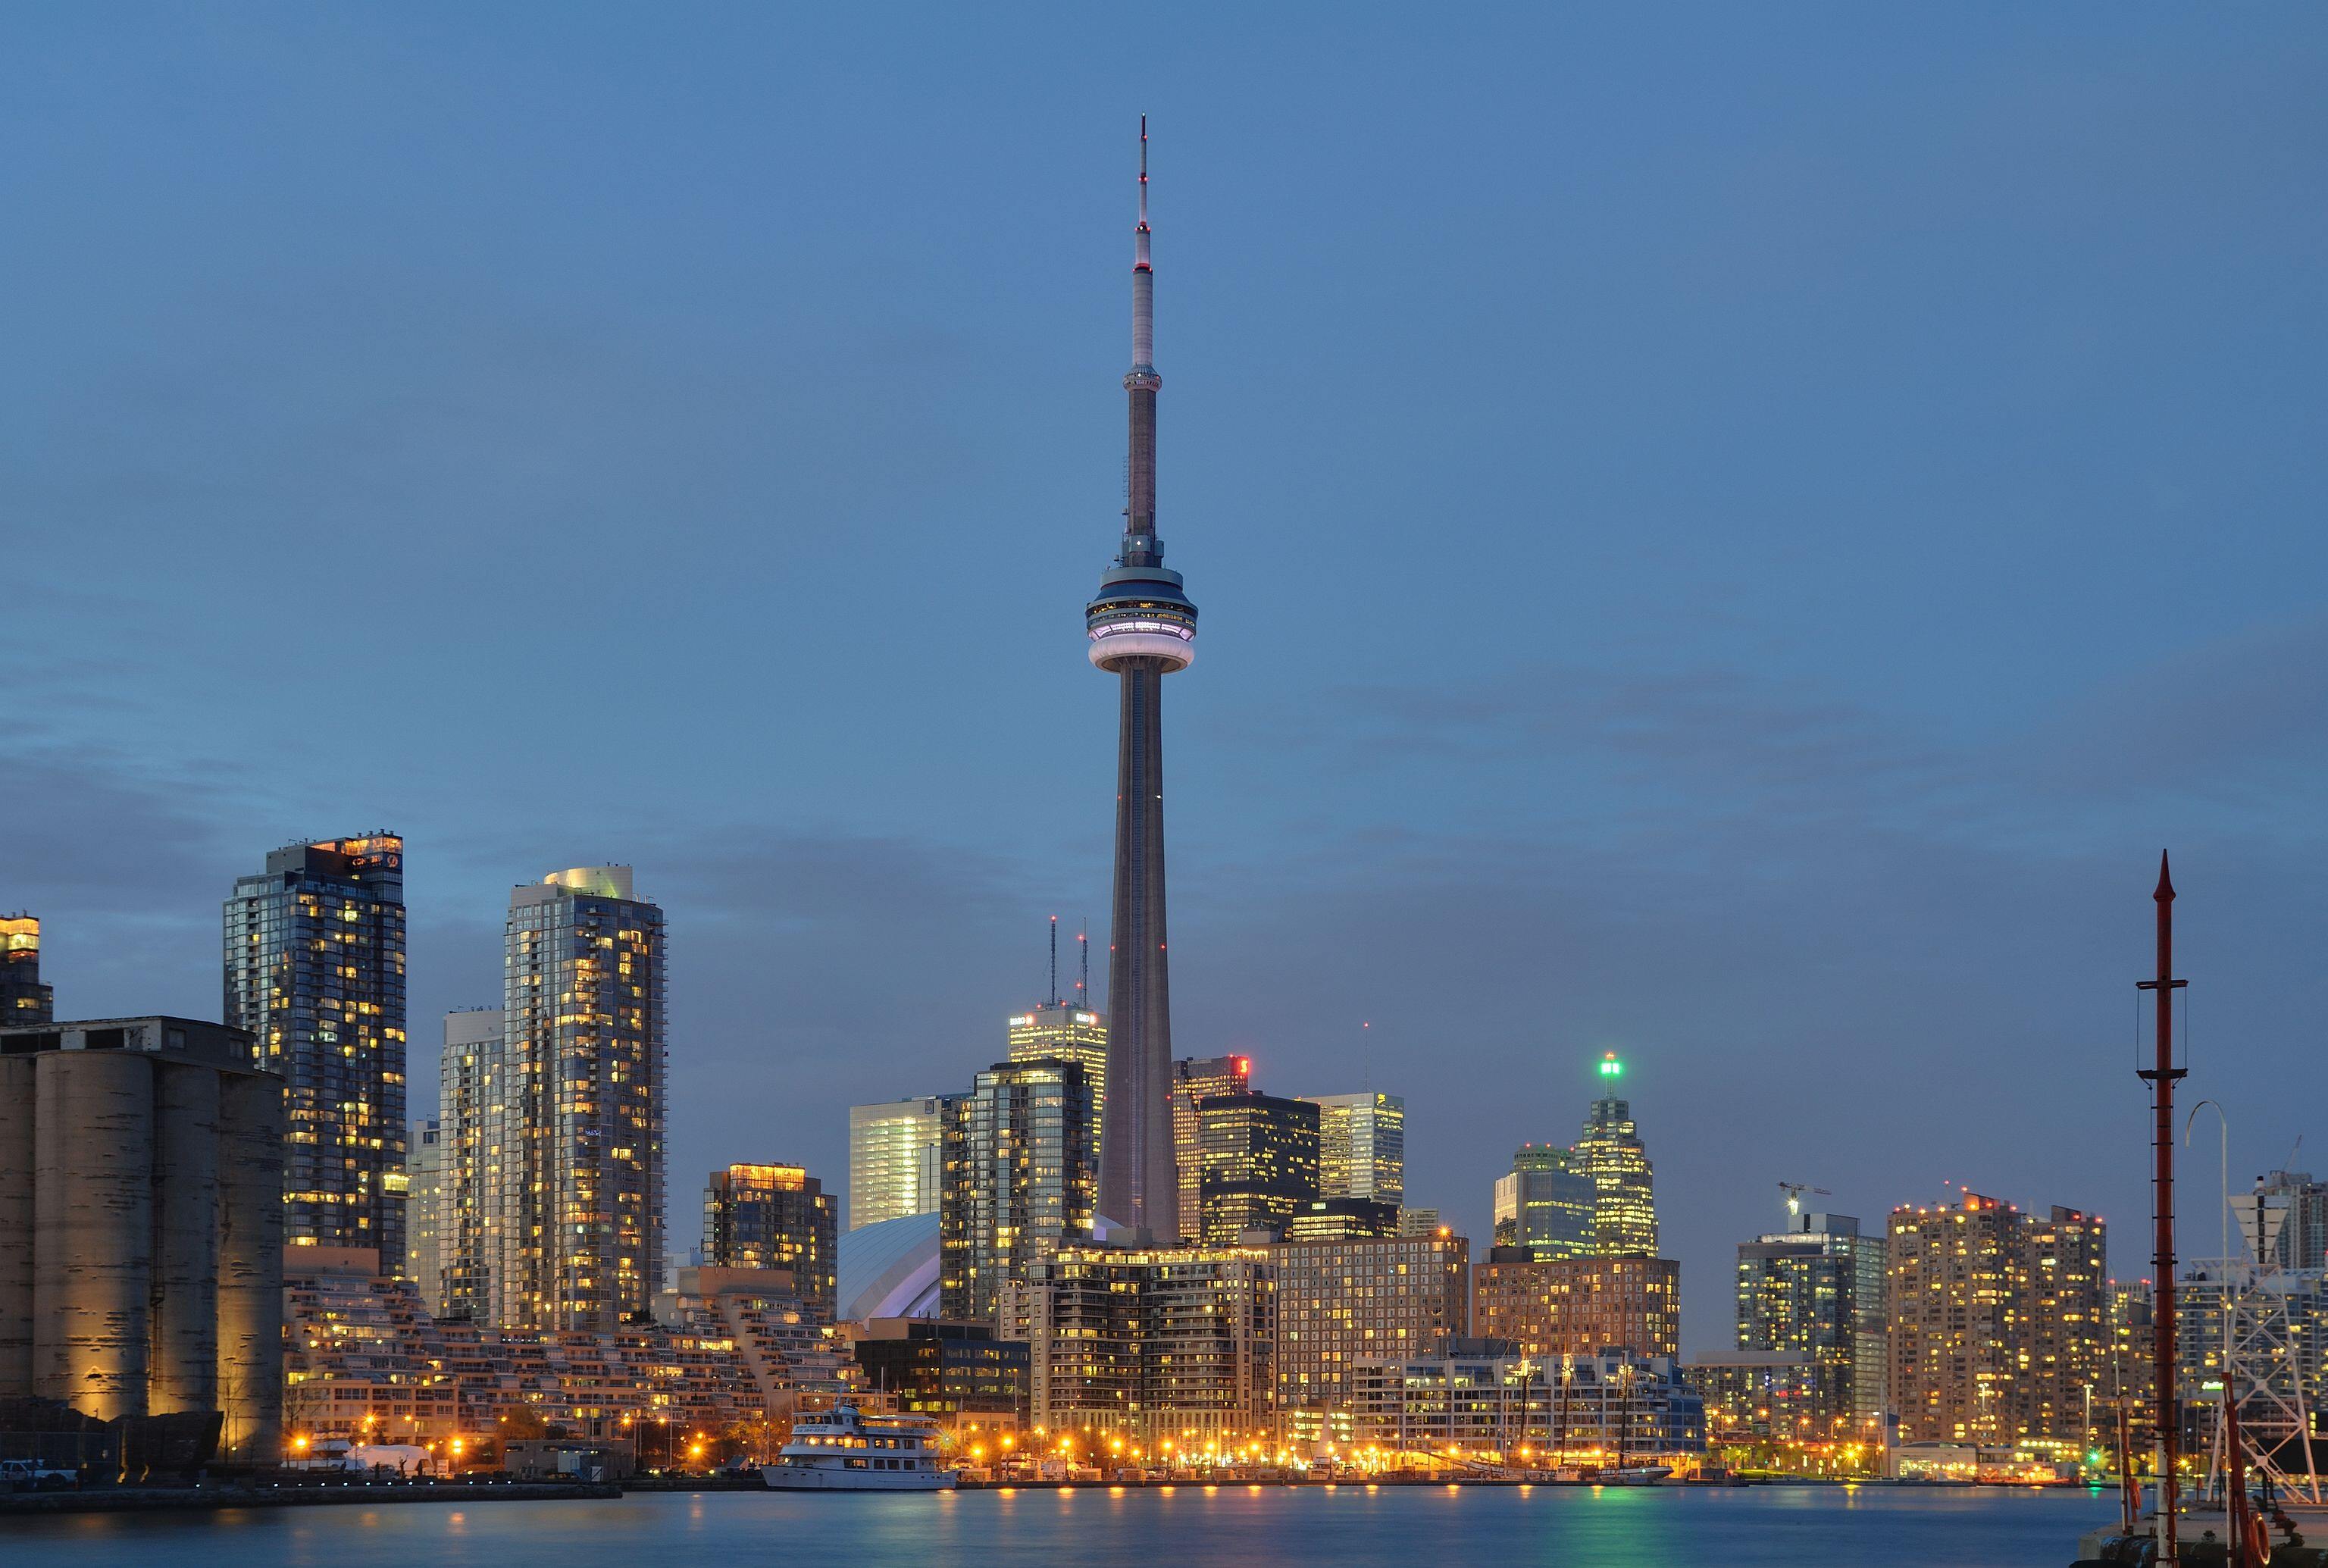 Toronto: Skyline at night.